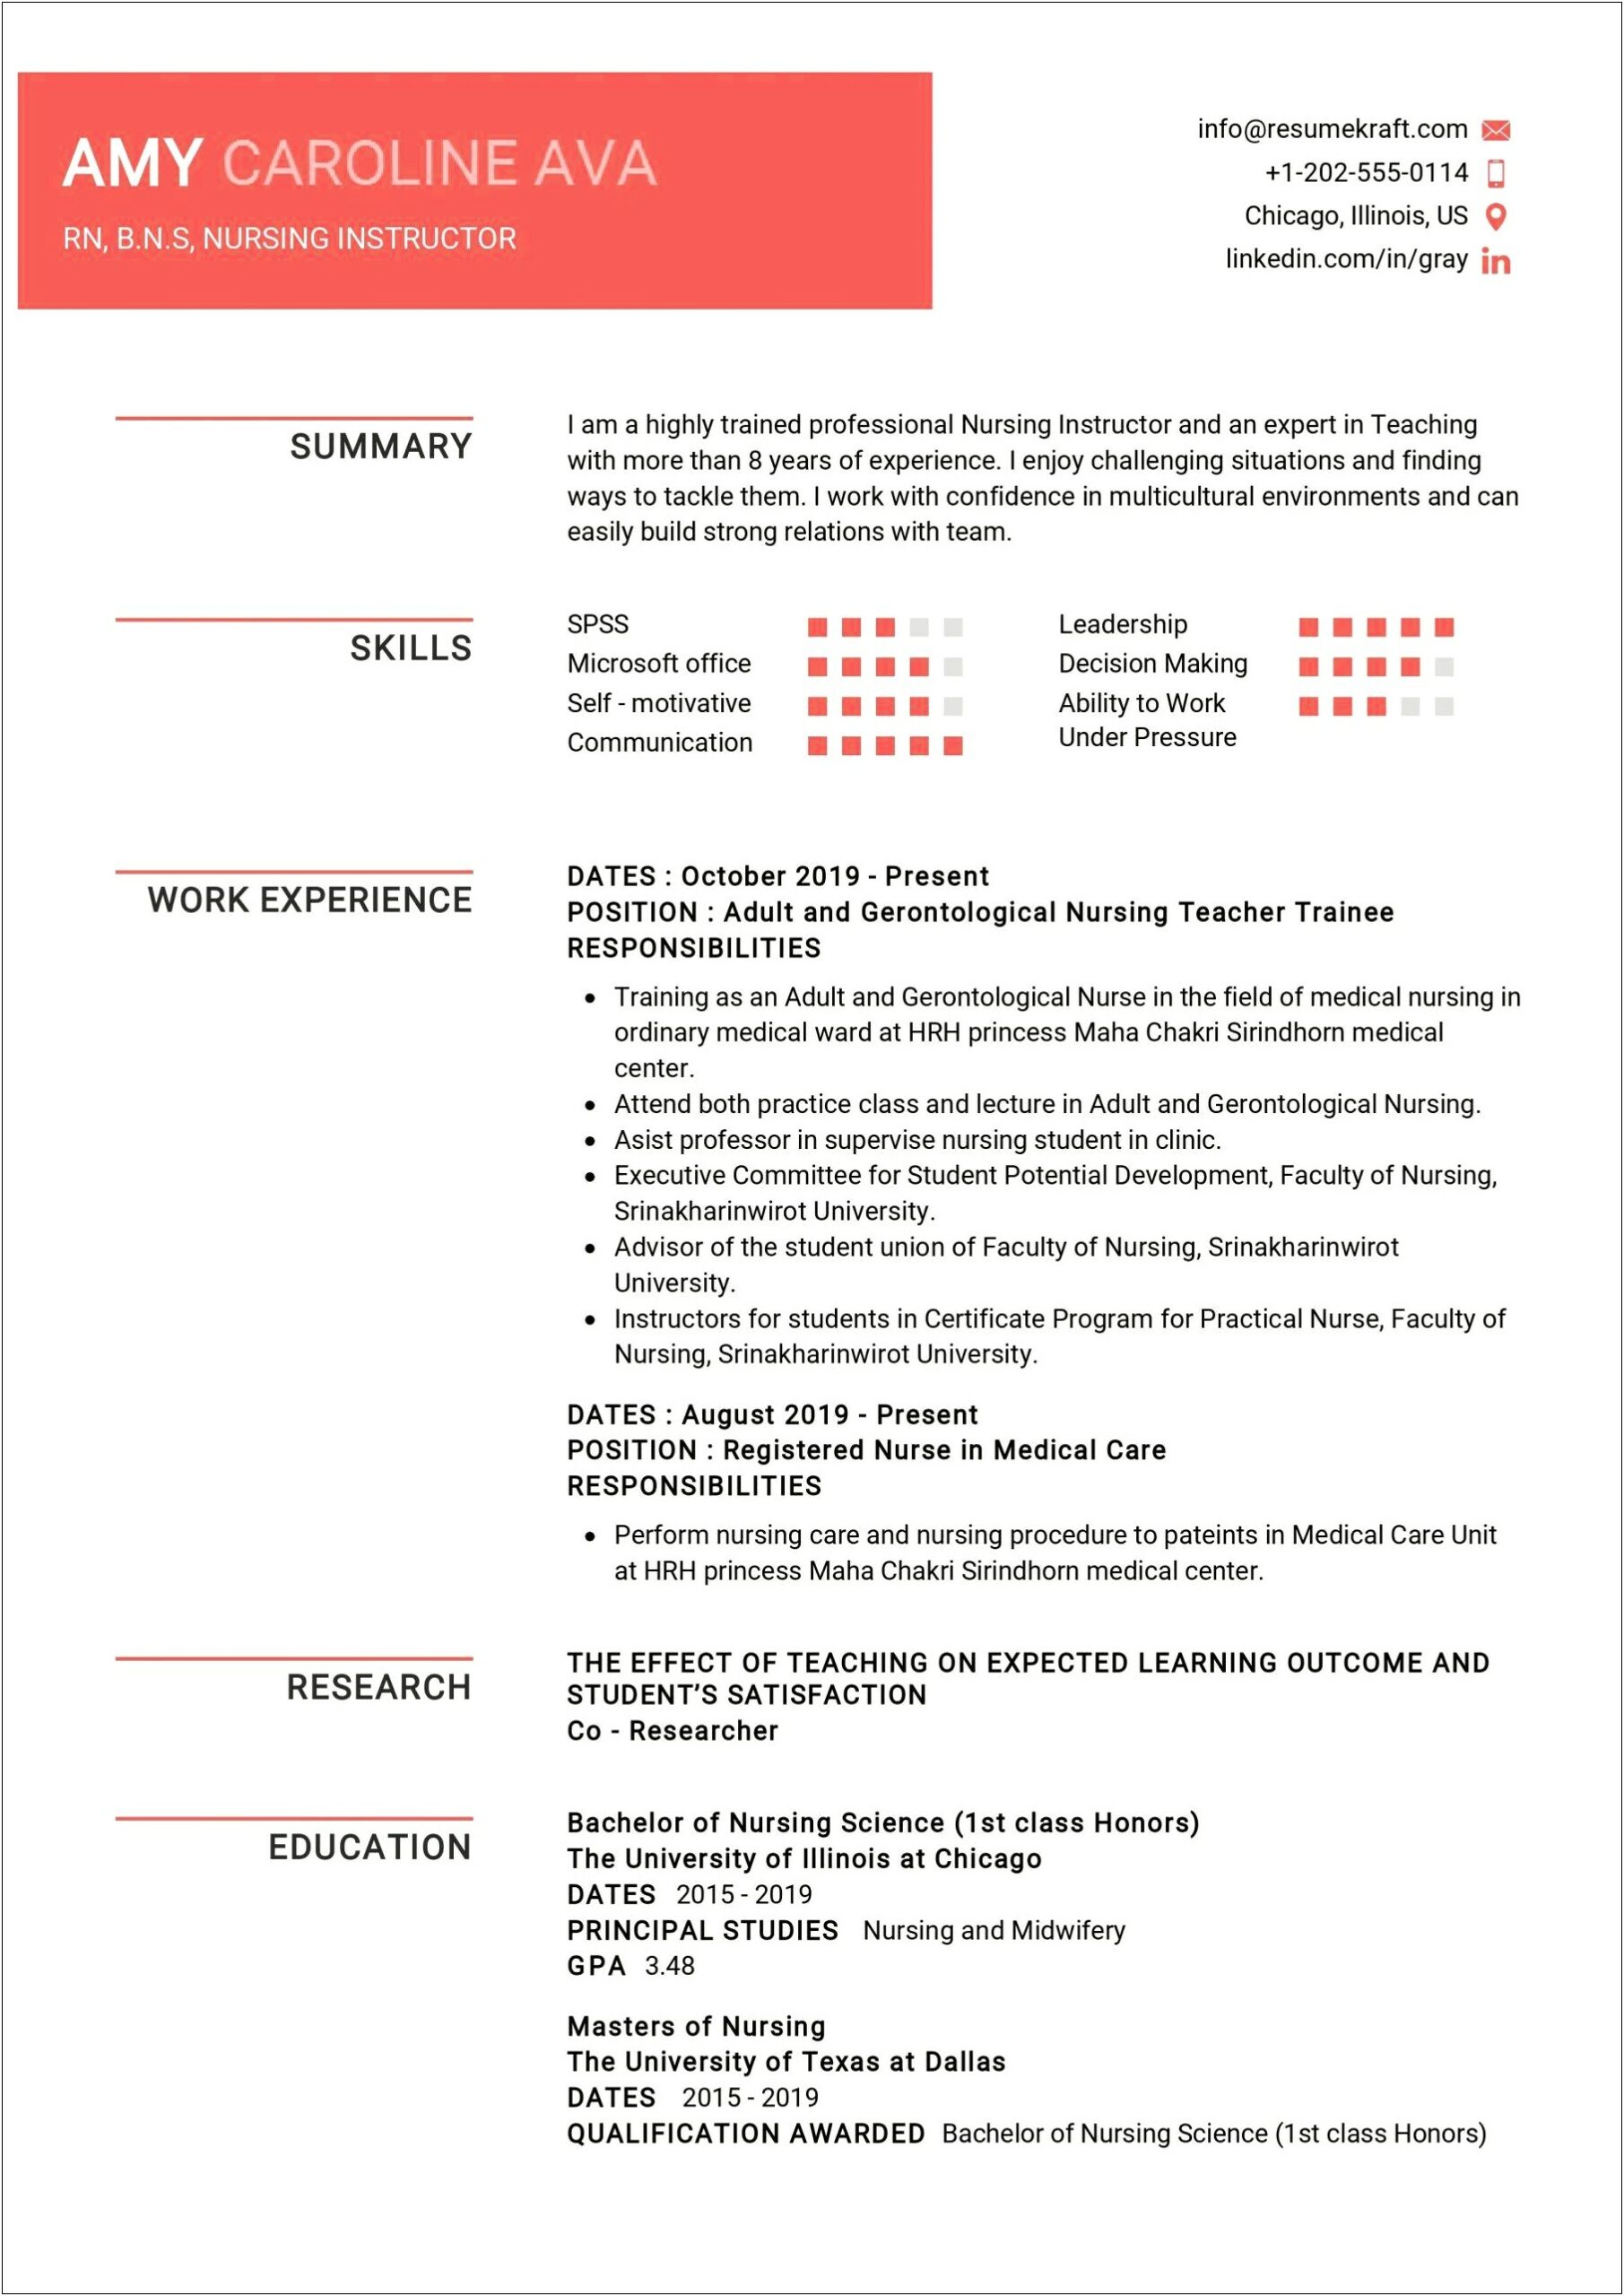 Resume Objective For Nursing Instructor